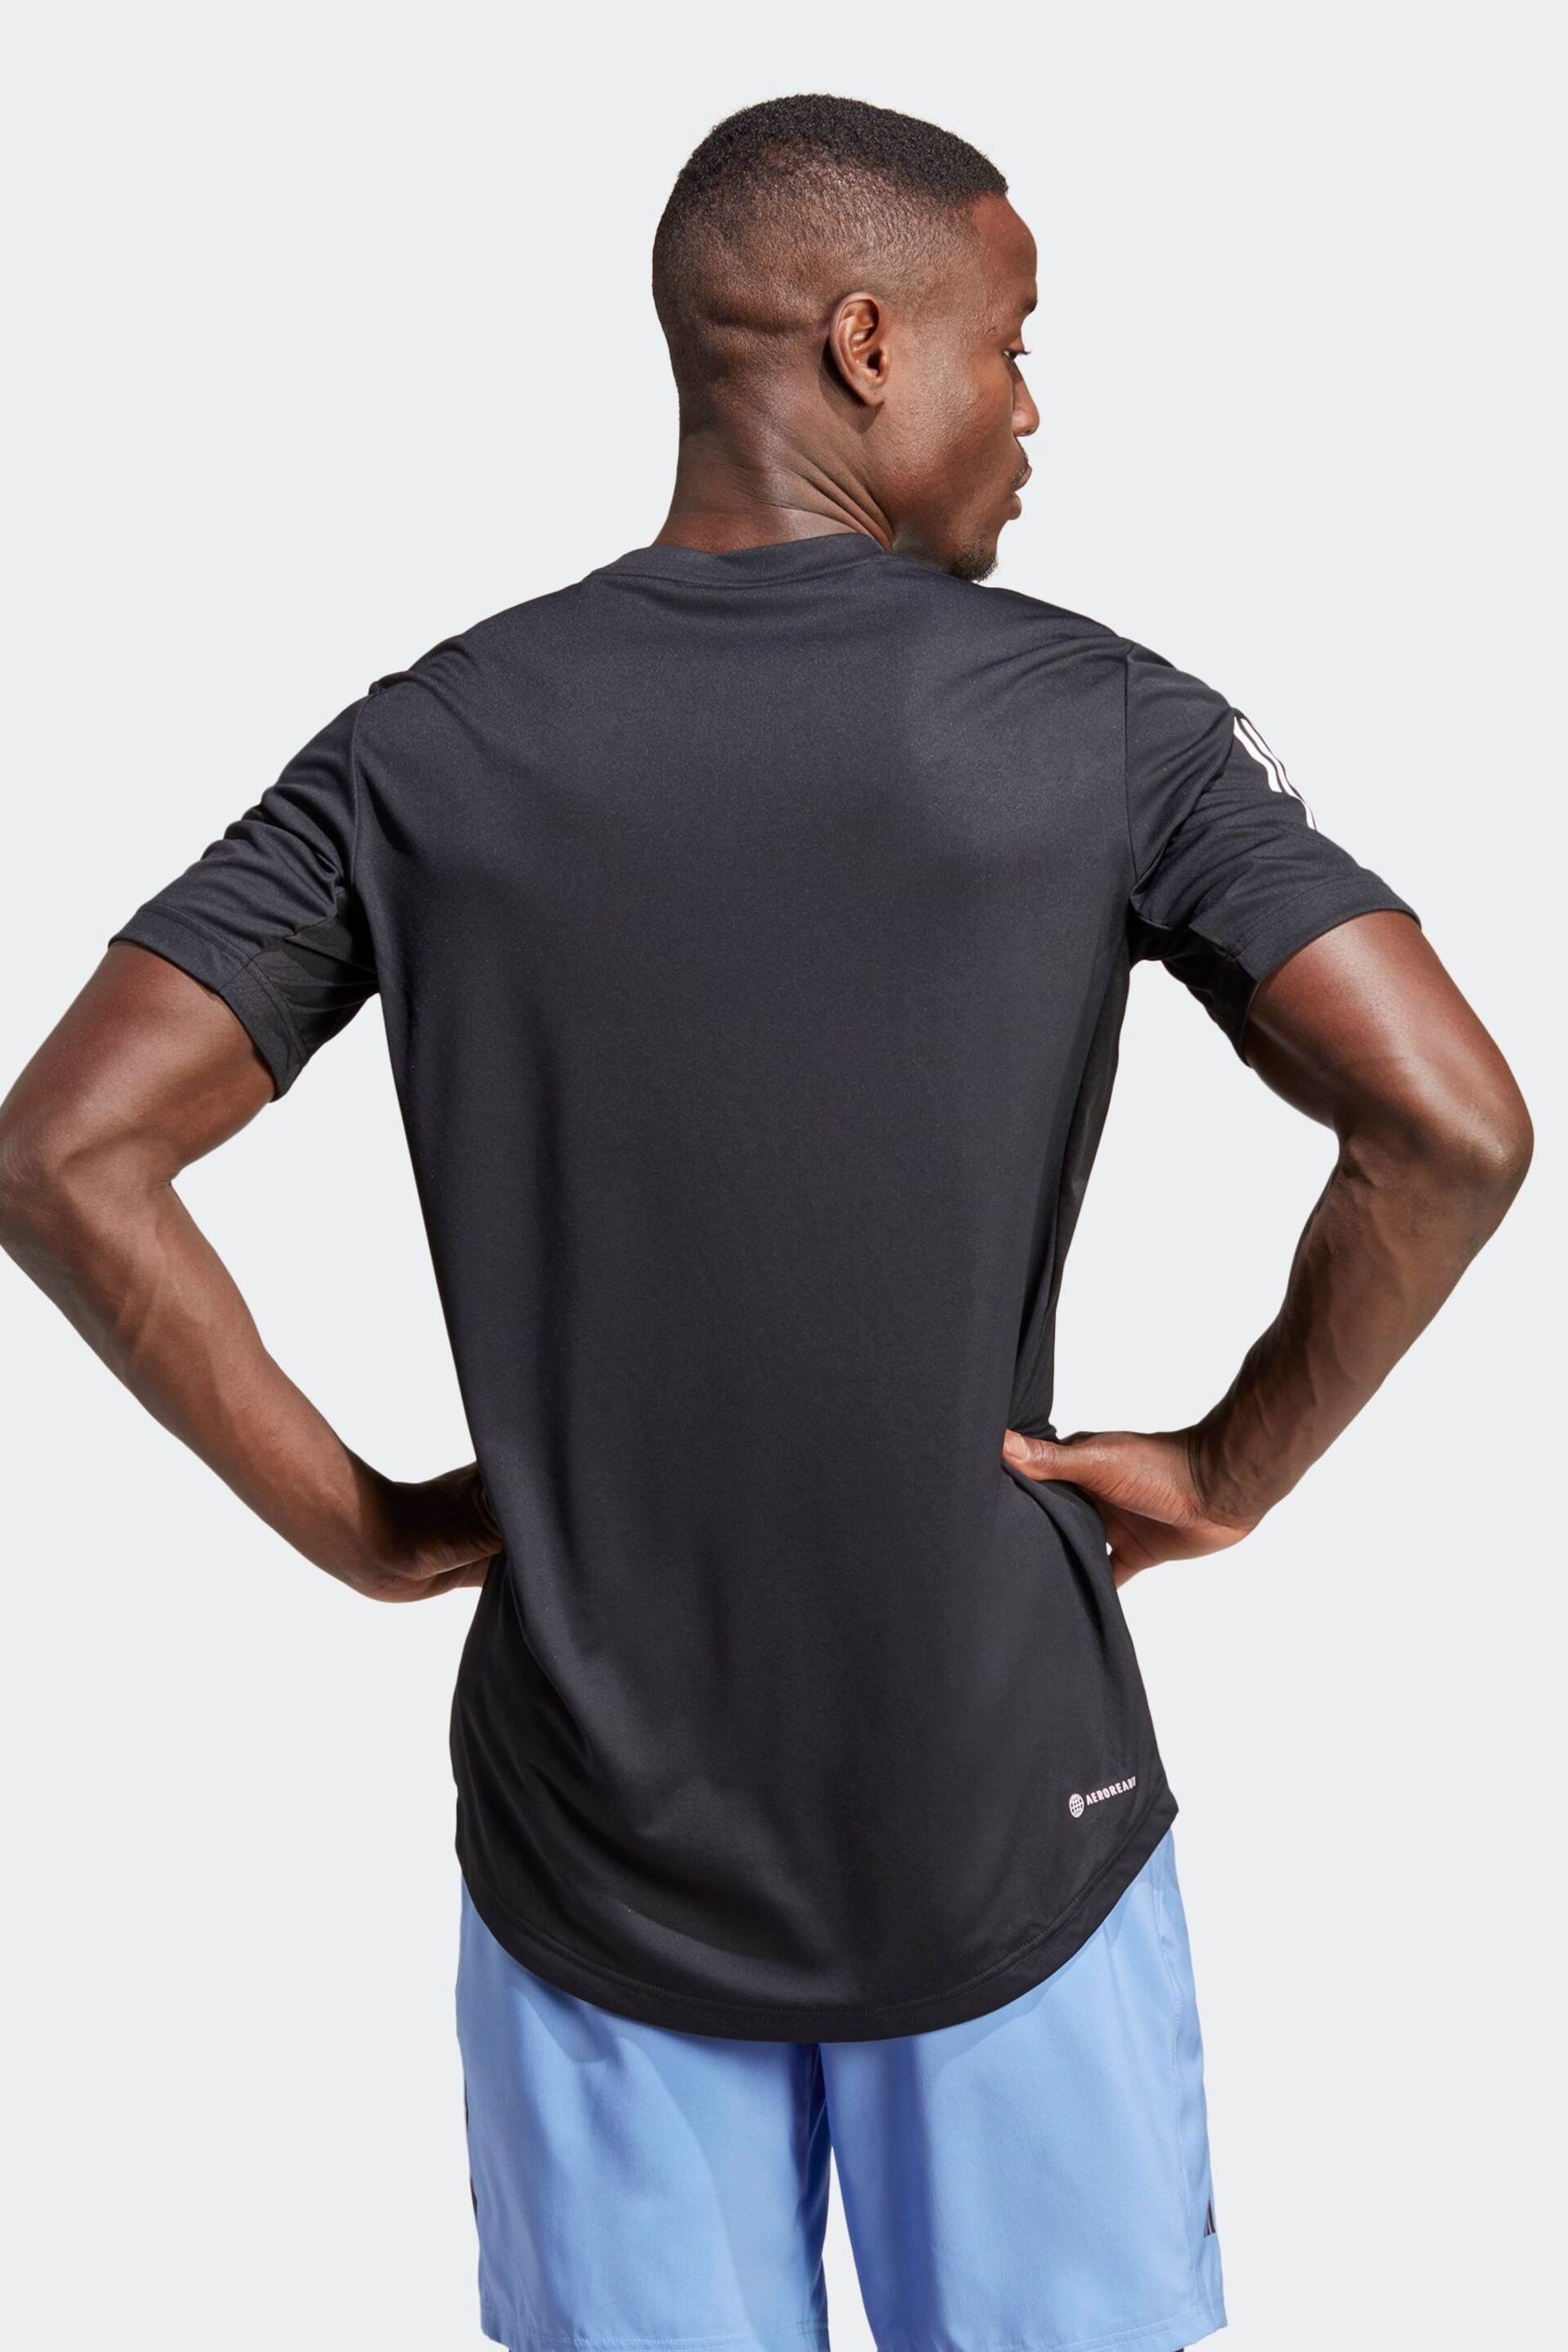 adidas Black Club 3-Stripes Tennis T-Shirt - Image 3 of 8